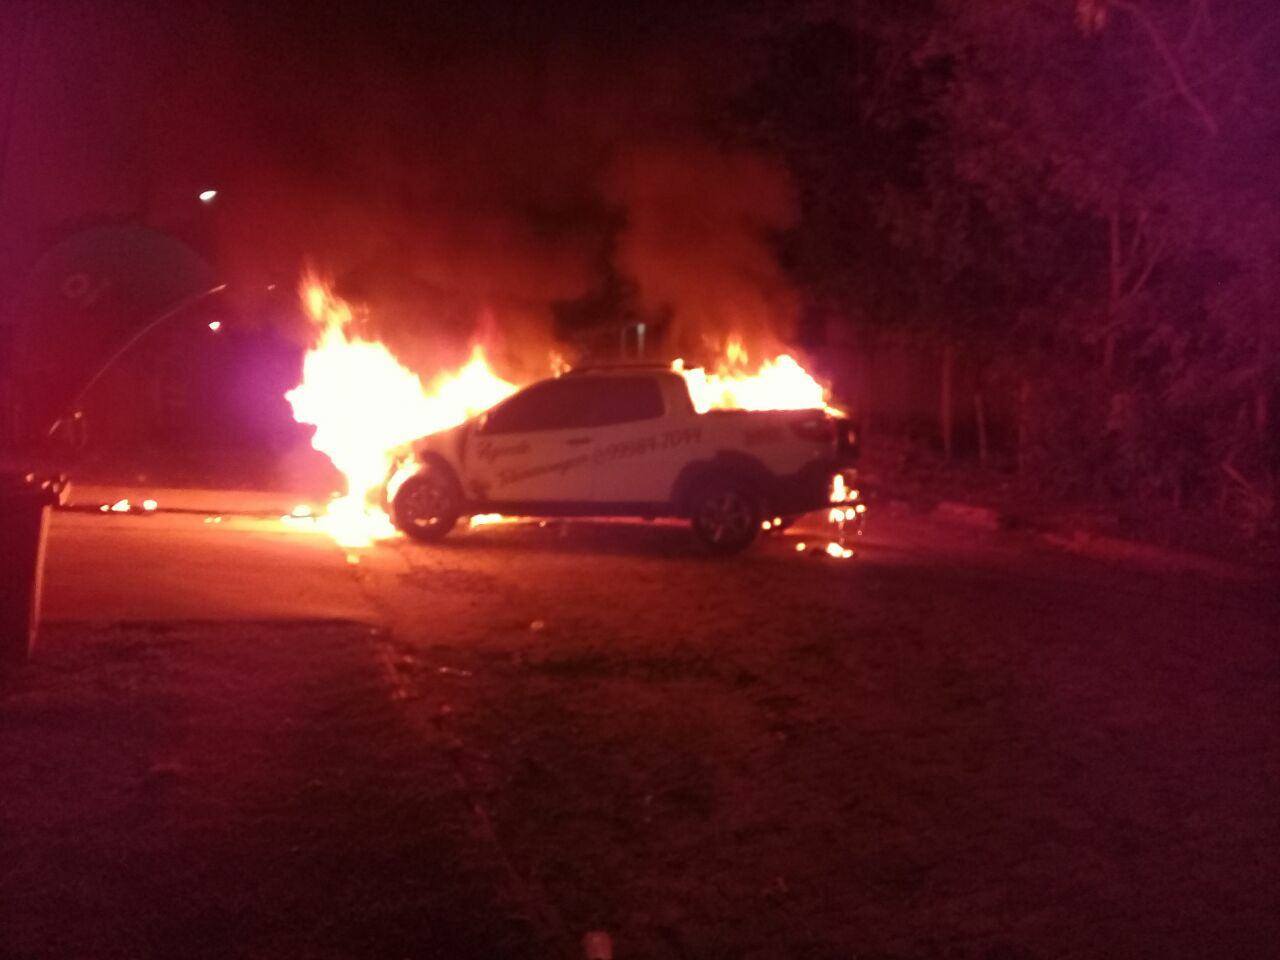 EM FEIJÓ: Criminosos ateiam fogo em veículo de radialista na garagem do posto de Saúde